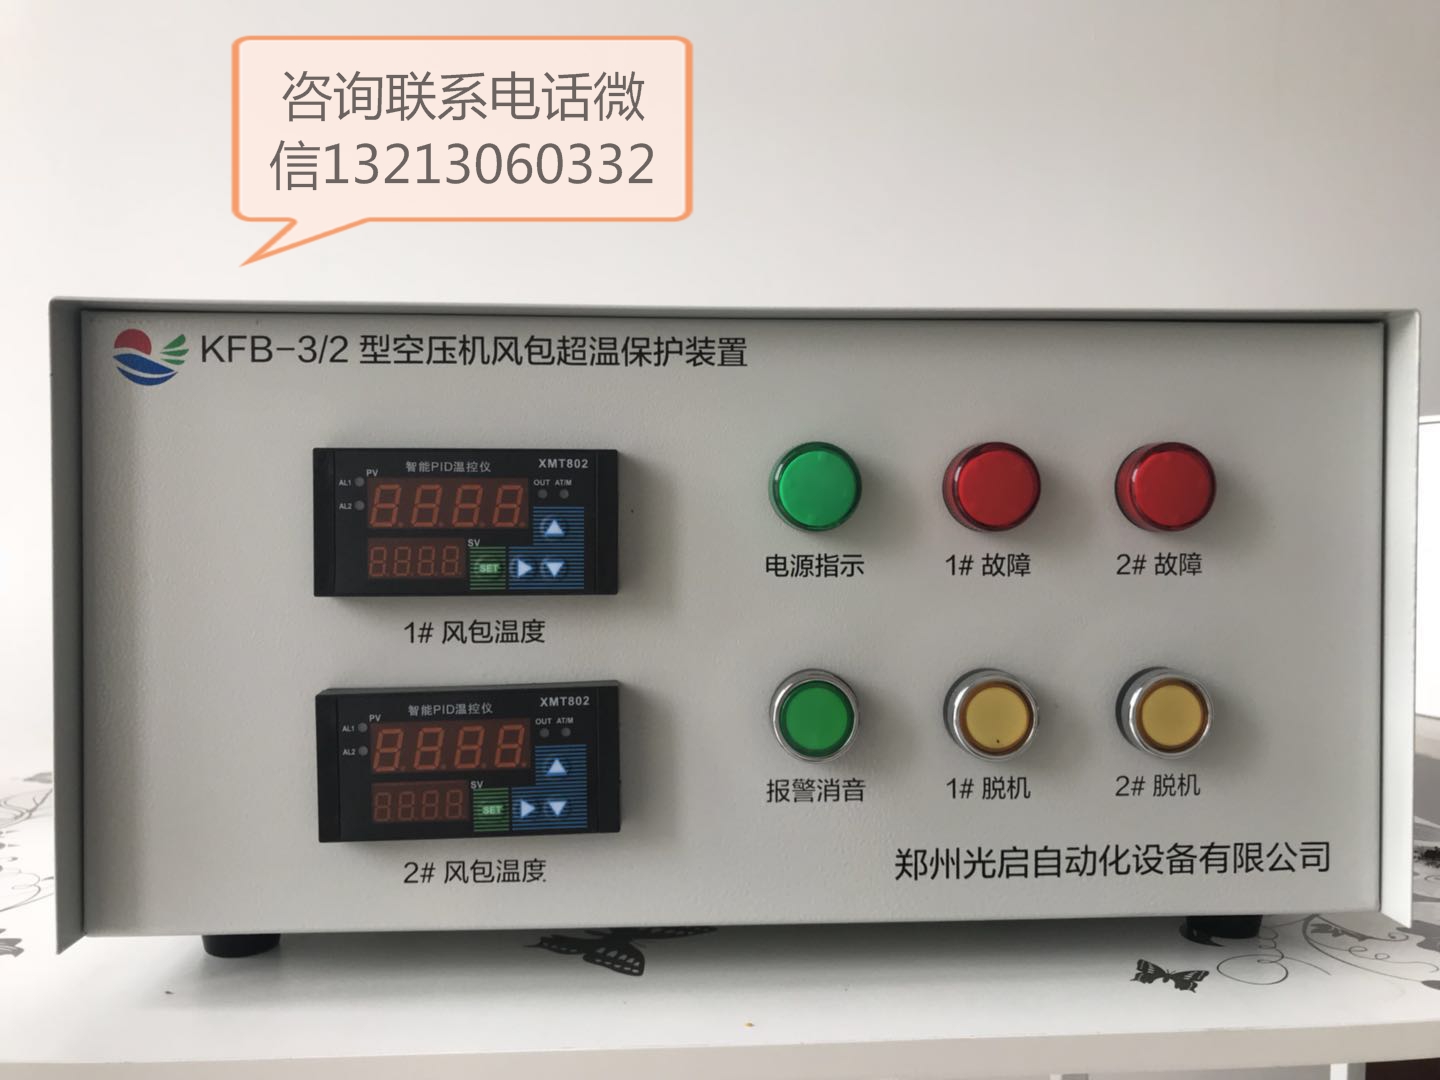 矿用KFB-PC/3型集控式触摸屏空压机风包超温保护装置简介  KFB-PC/3型集控式空压机